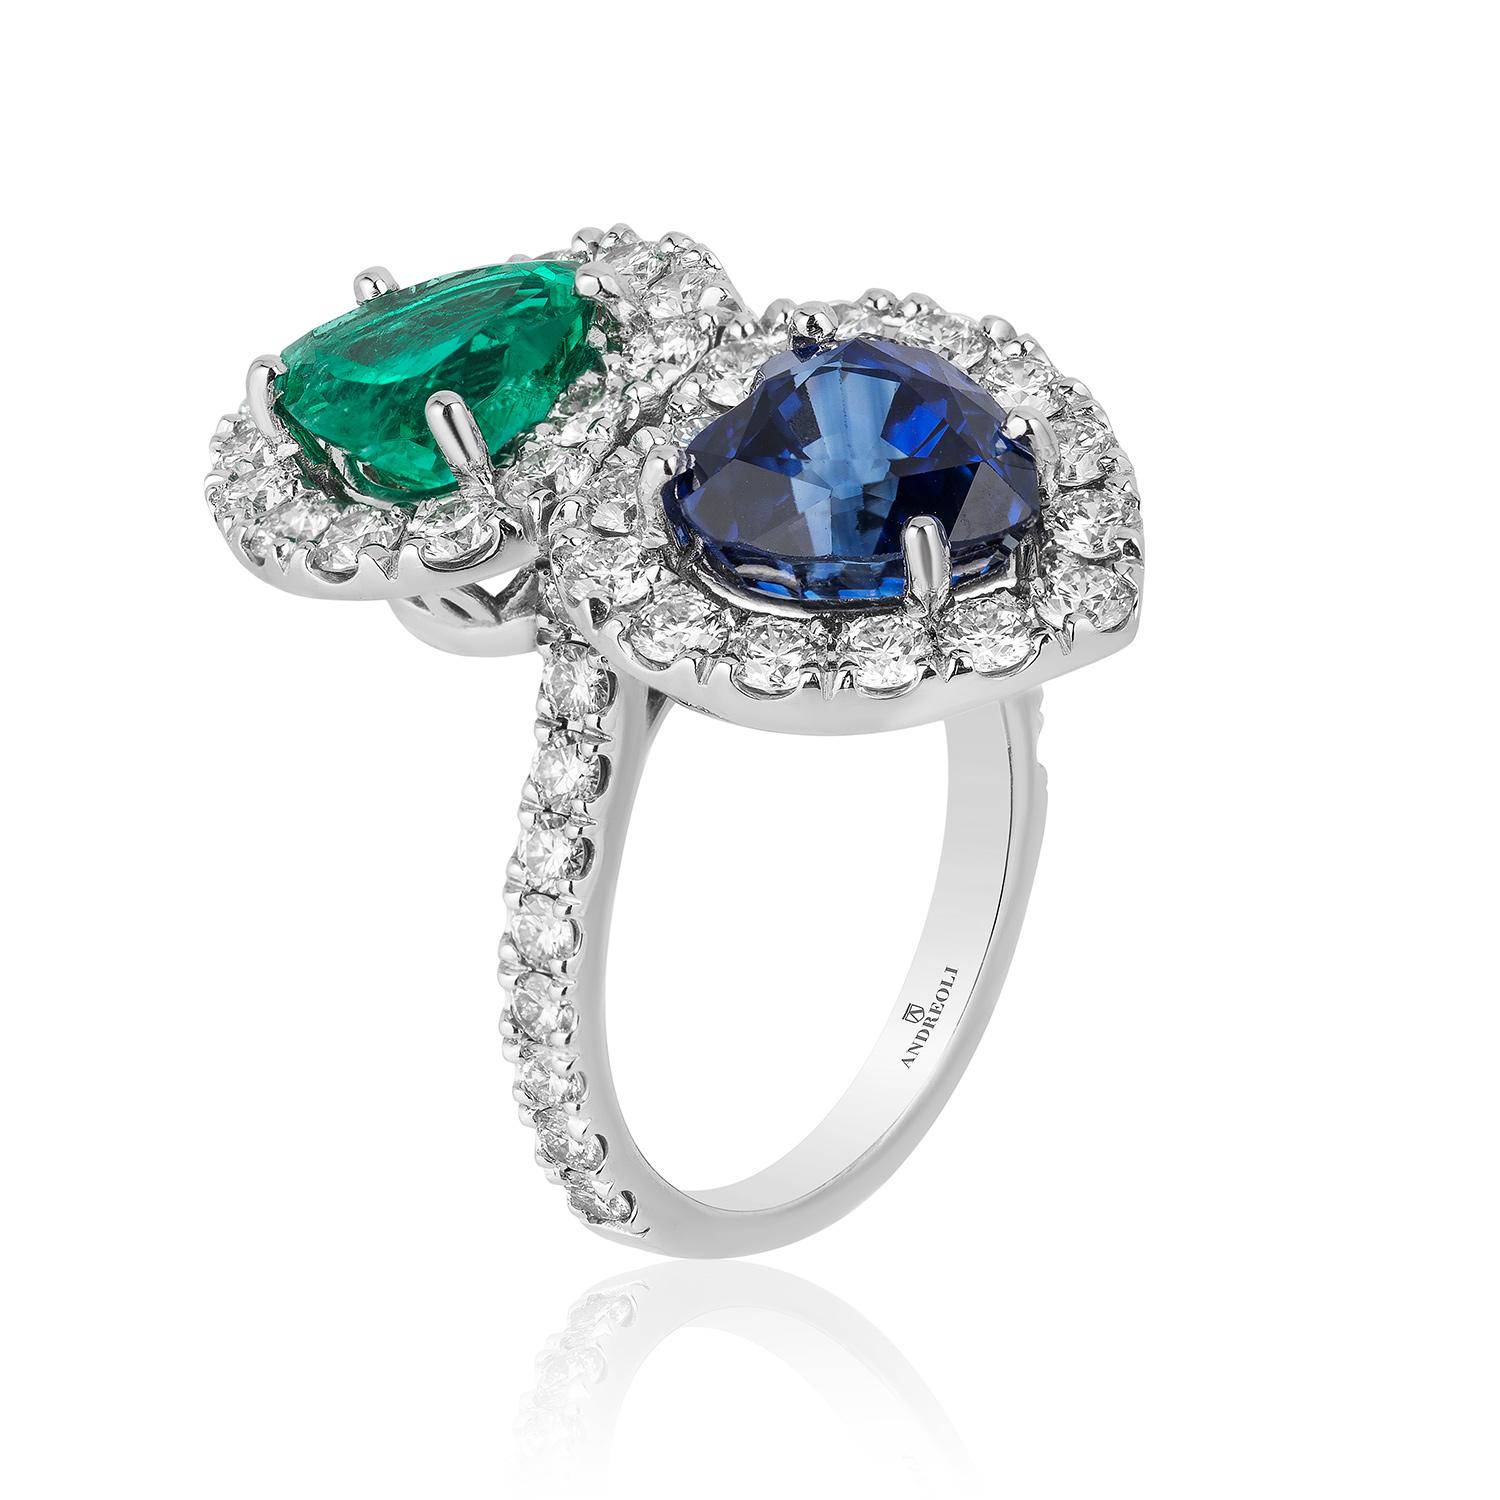 Andreoli Certified Emerald Colombian Sapphire Ceylon Heart Diamond Platinum Ring. Cette bague comporte une émeraude colombienne de 2,05 carats, un saphir de Ceylan de 3,91 carats, entourés de 2,11 carats de diamants de couleur F-G-H et de pureté